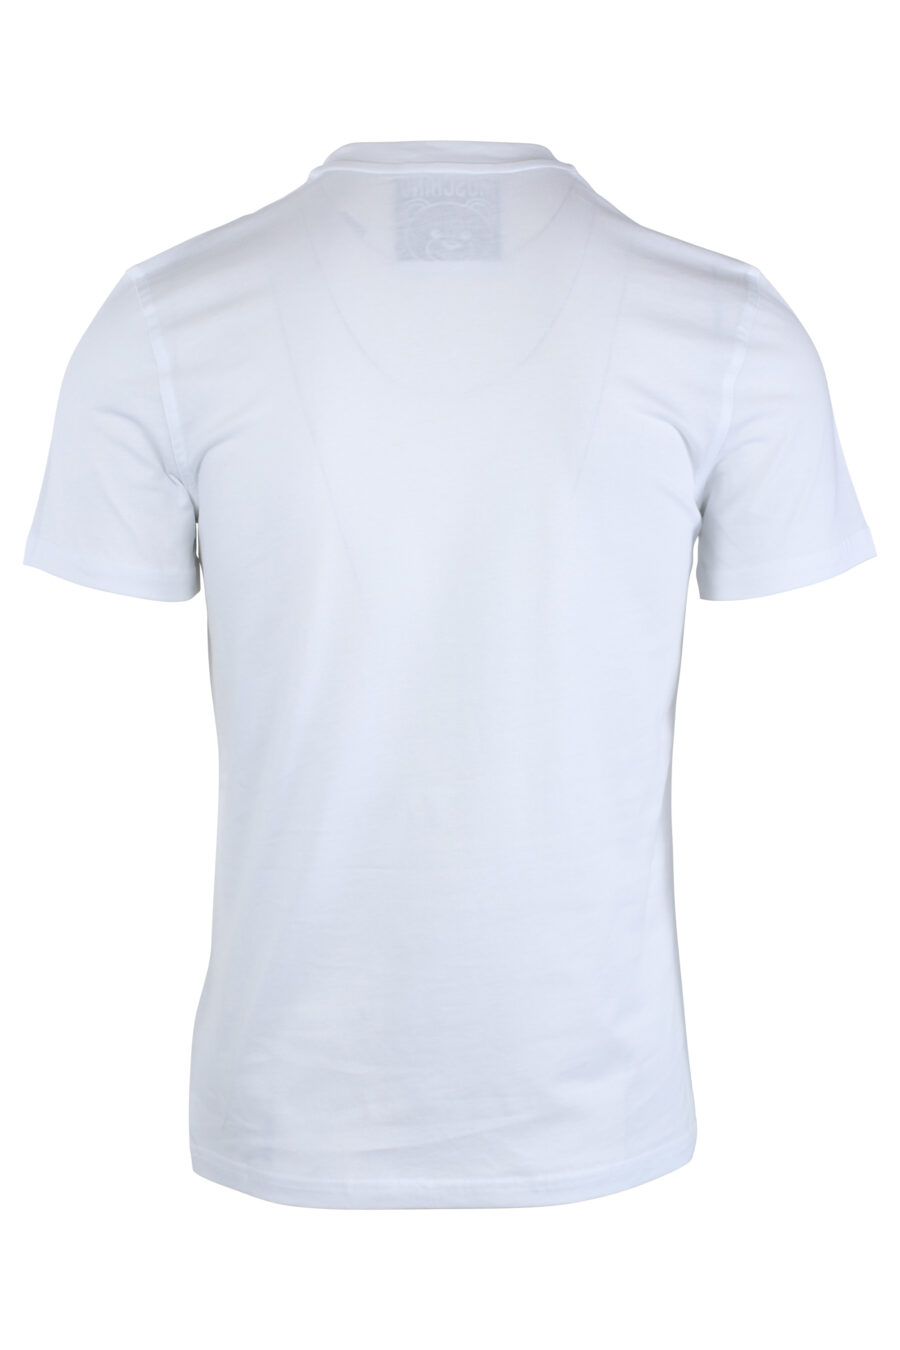 Weißes T-Shirt mit einfarbigem Bären-Minilogo - IMG 1650